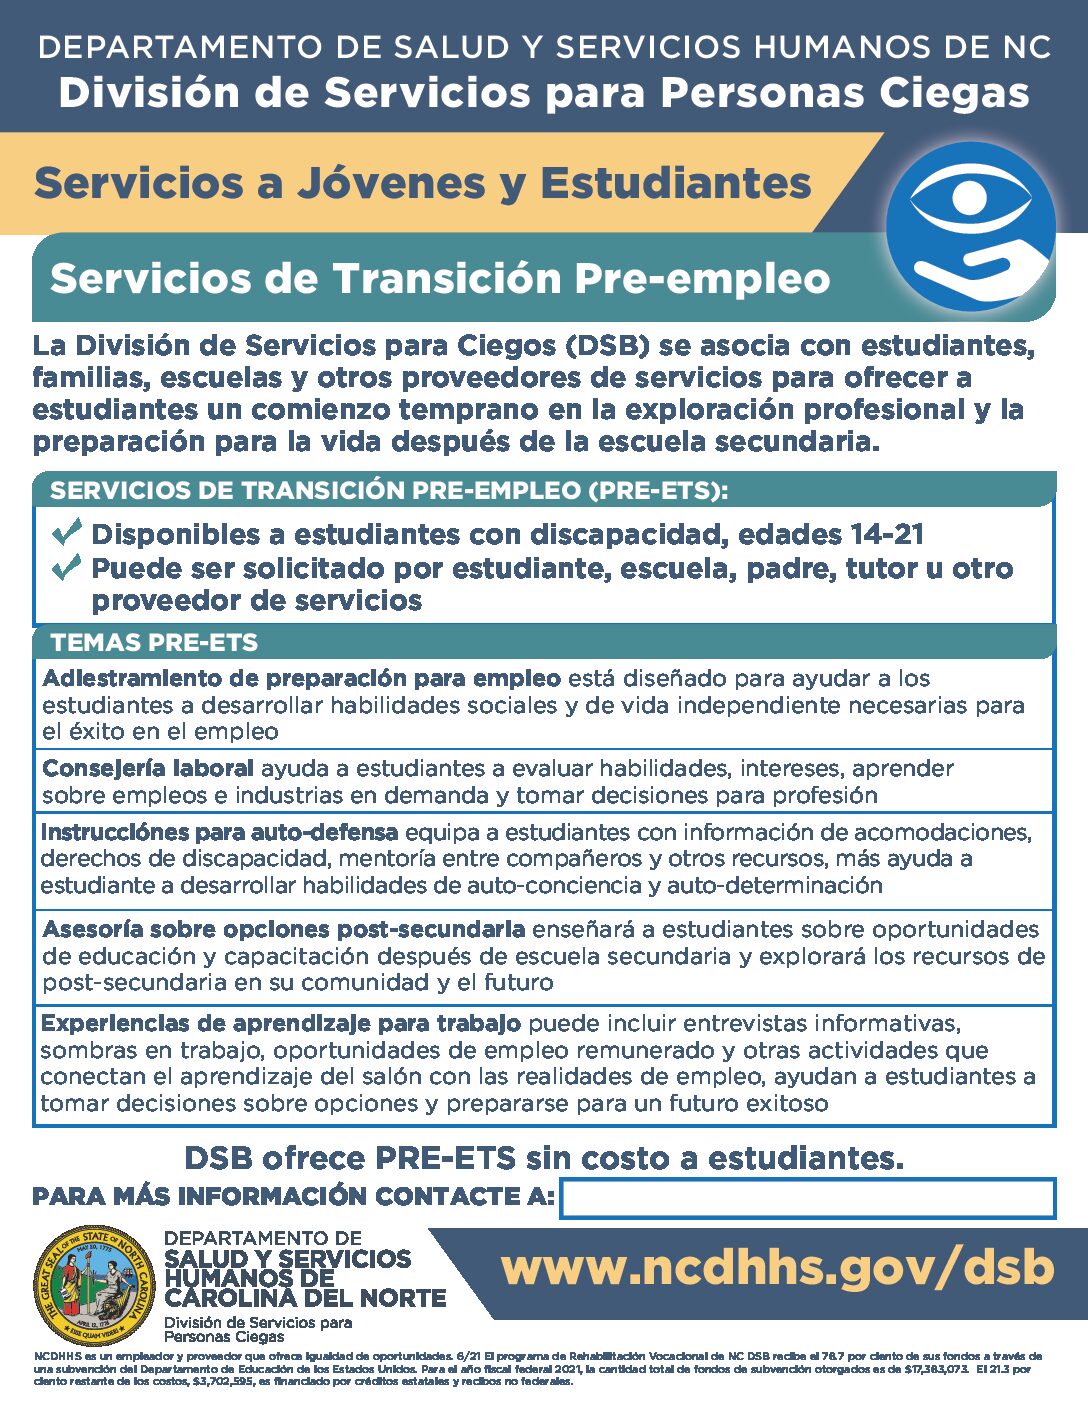 خدمات انتقال ما قبل التوظيف DSB (الإسبانية الجاهزة للويب)